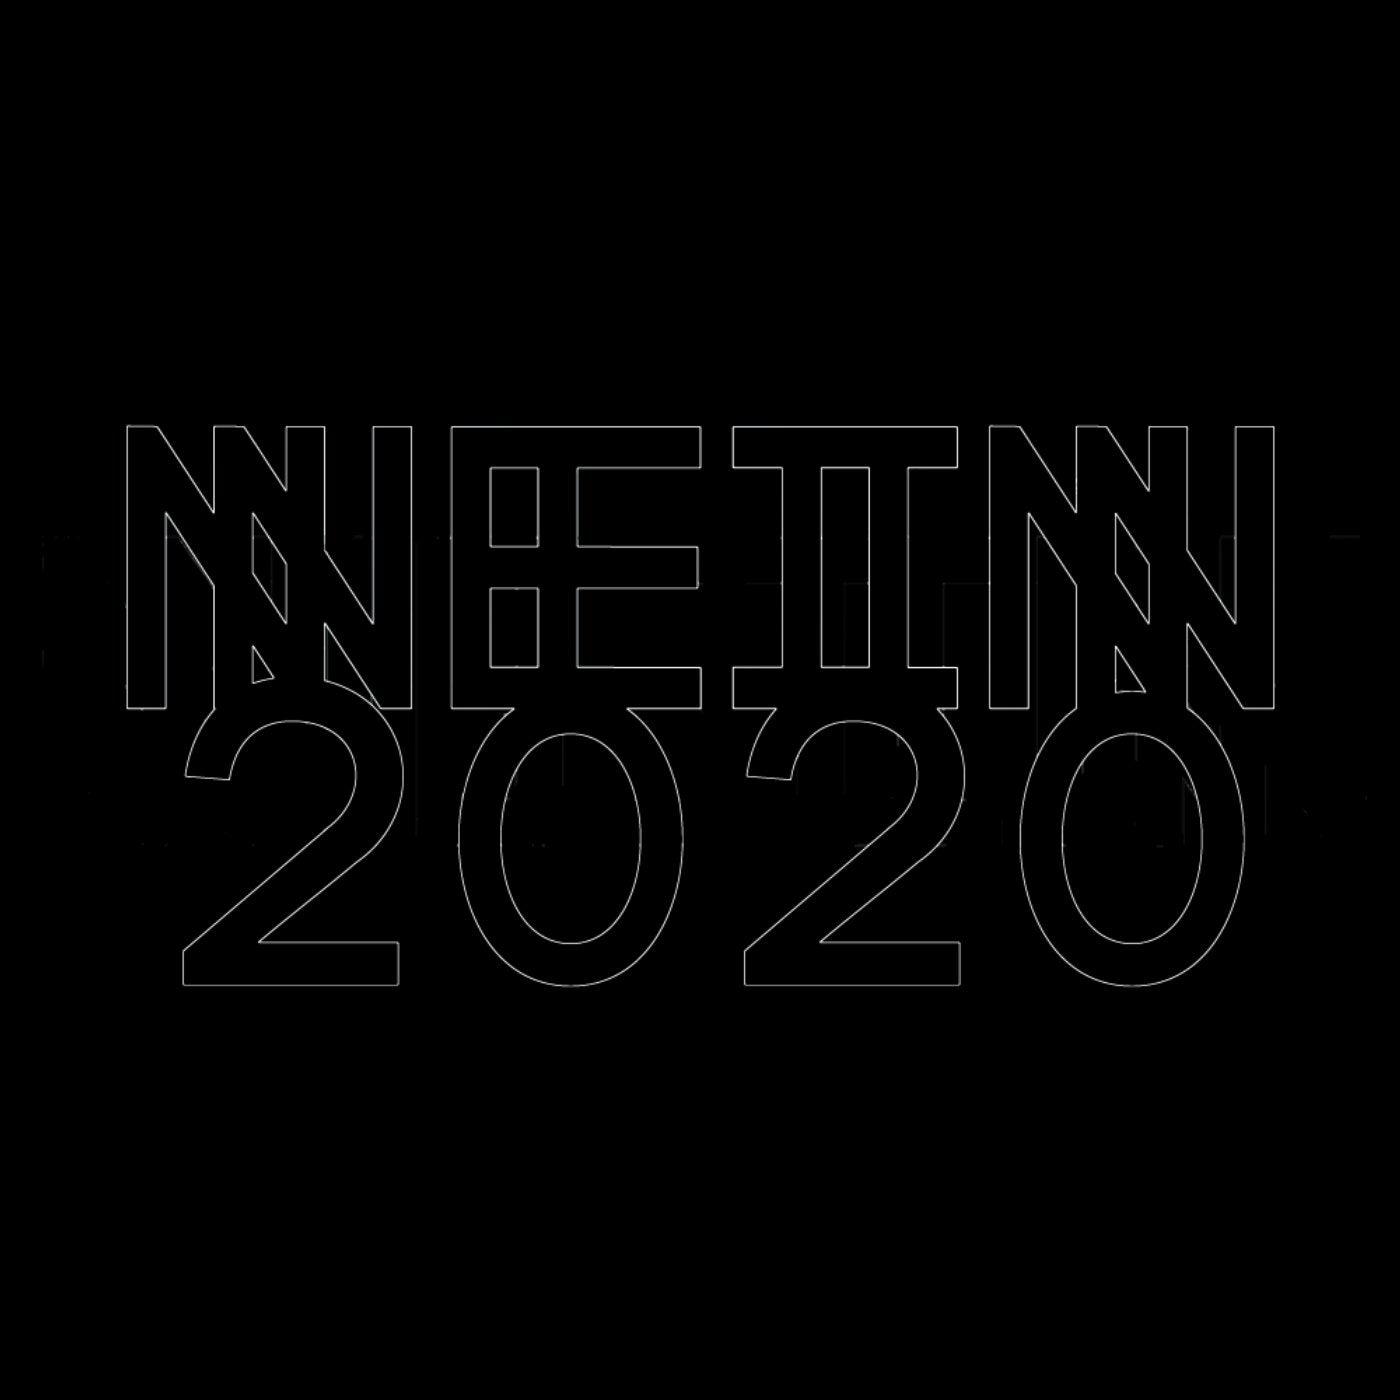 Nein 2020